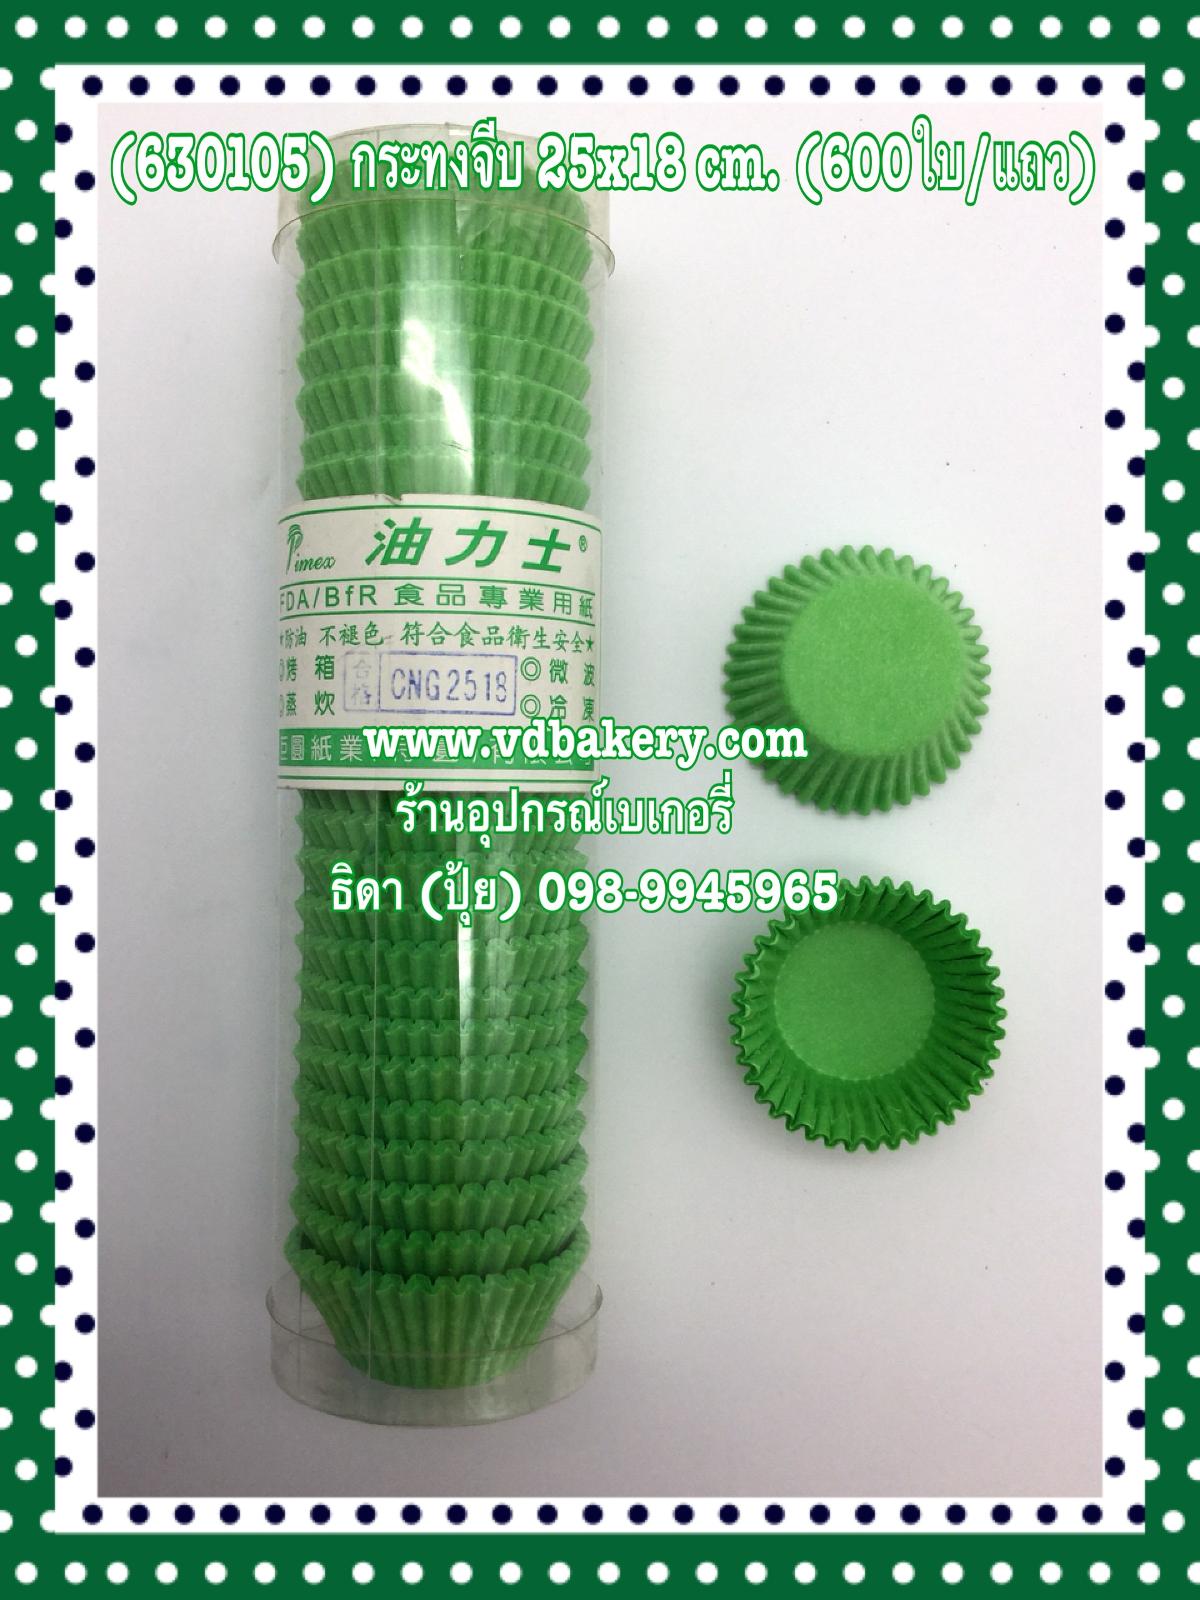 (630105) กระทงจีบ CNG-2518 สีเขียว (600ใบ/แถว) (ไต้หวัน)